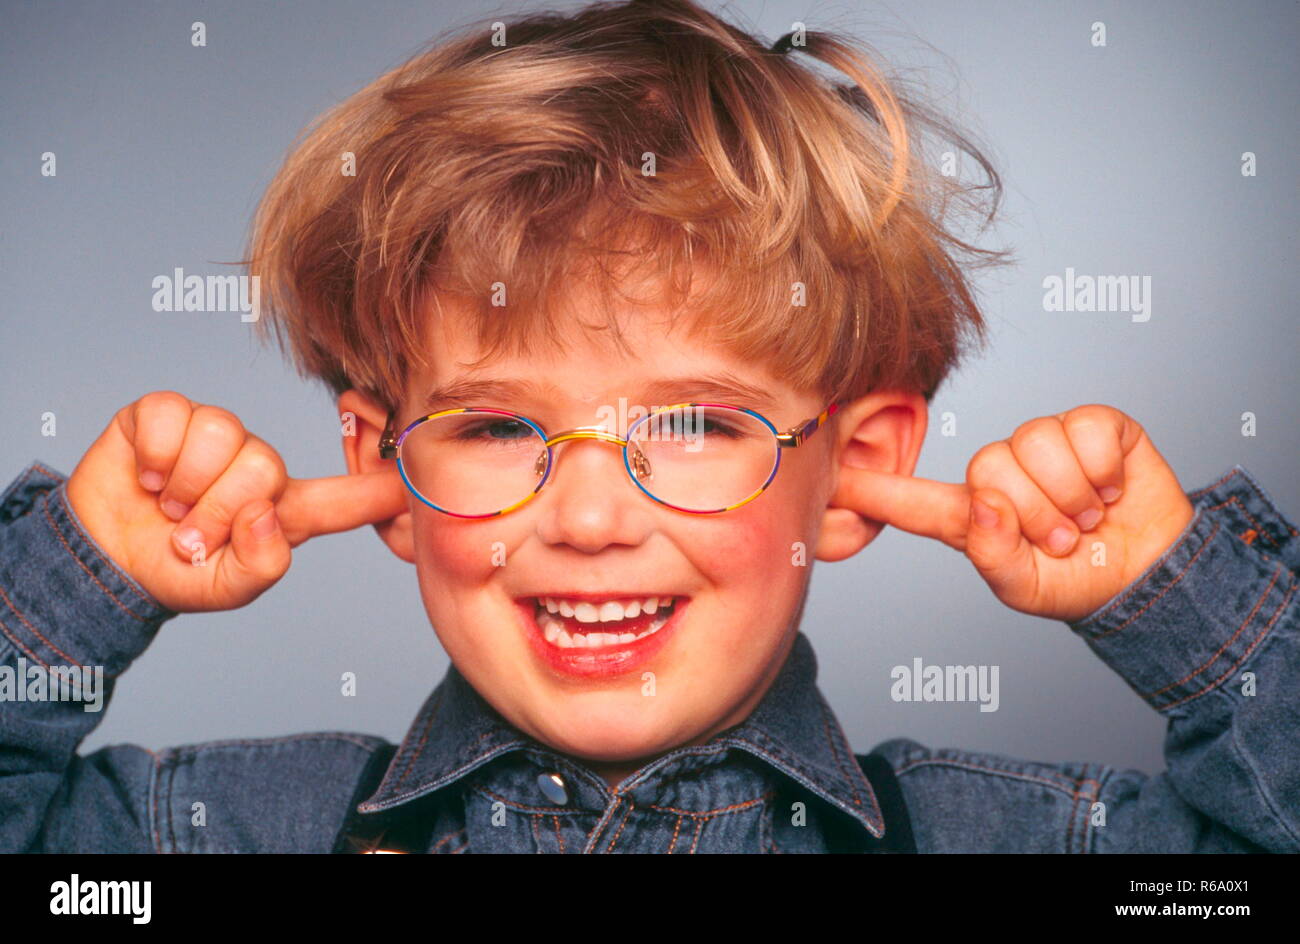 Portrait, Close-up, lachender Junge mit Brille, 6 Jahre, haelt sich die Ohren mit den Zeigefingern zu Stock Photo